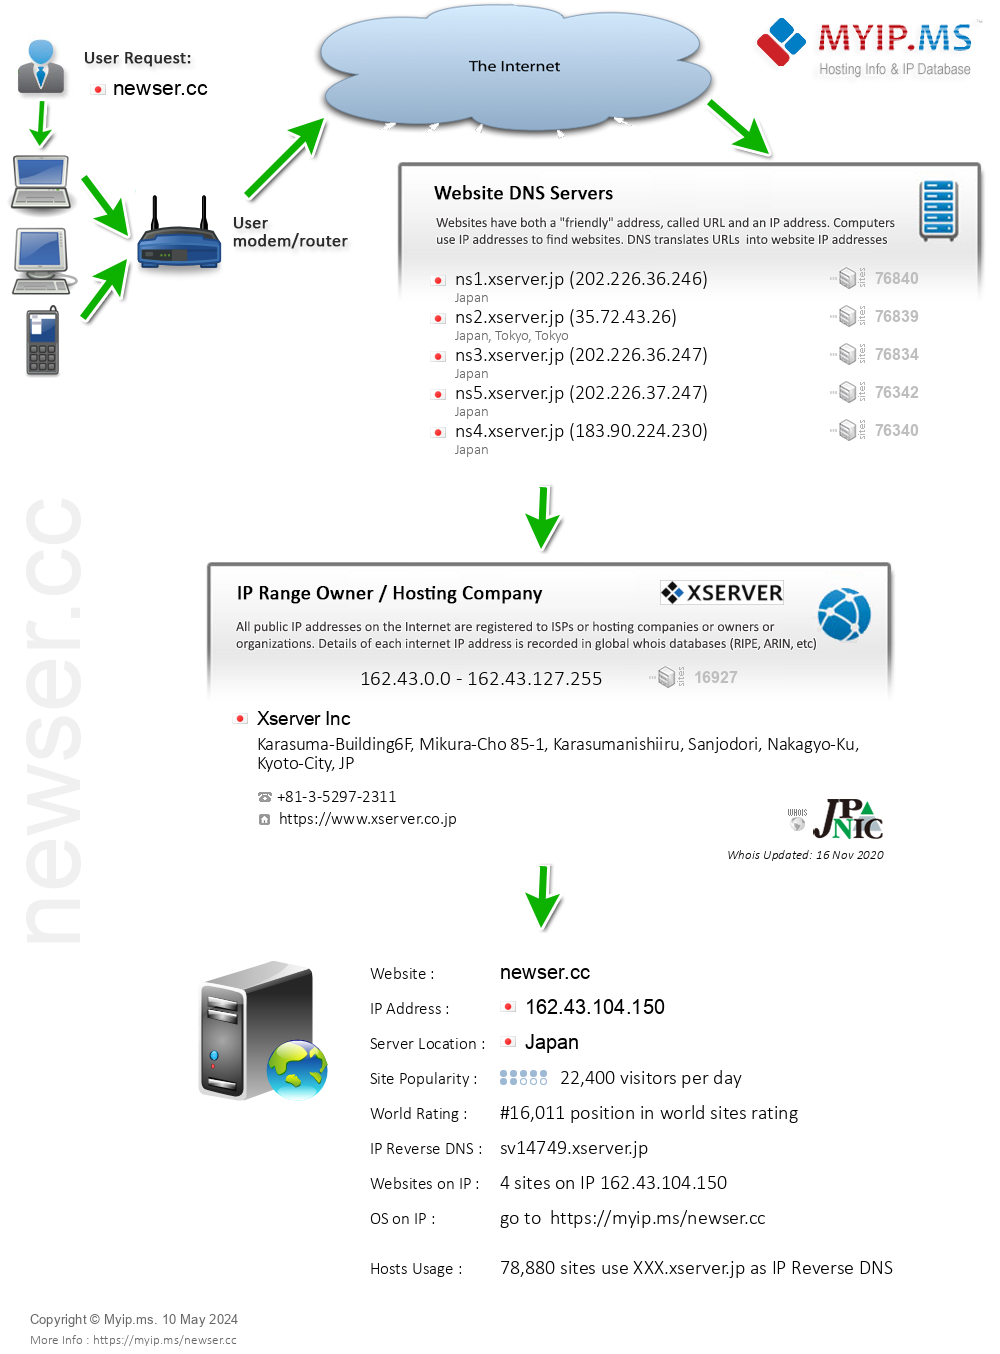 Newser.cc - Website Hosting Visual IP Diagram